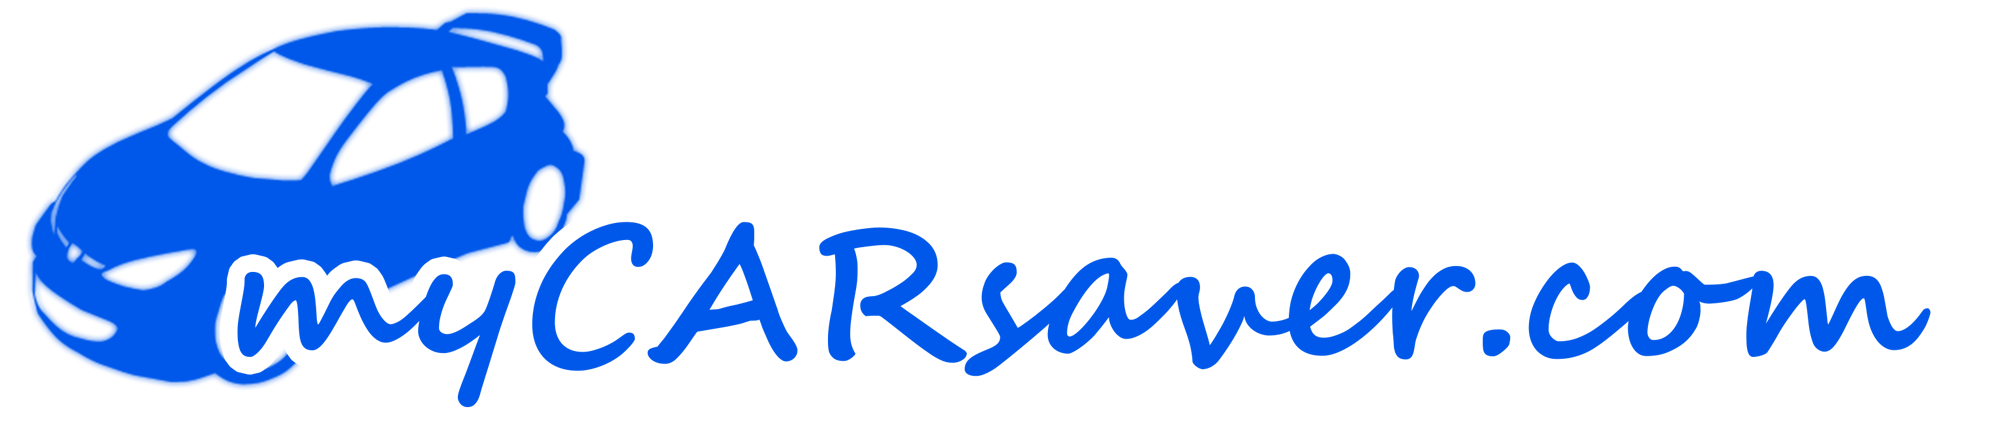 mycarsaver.com logo